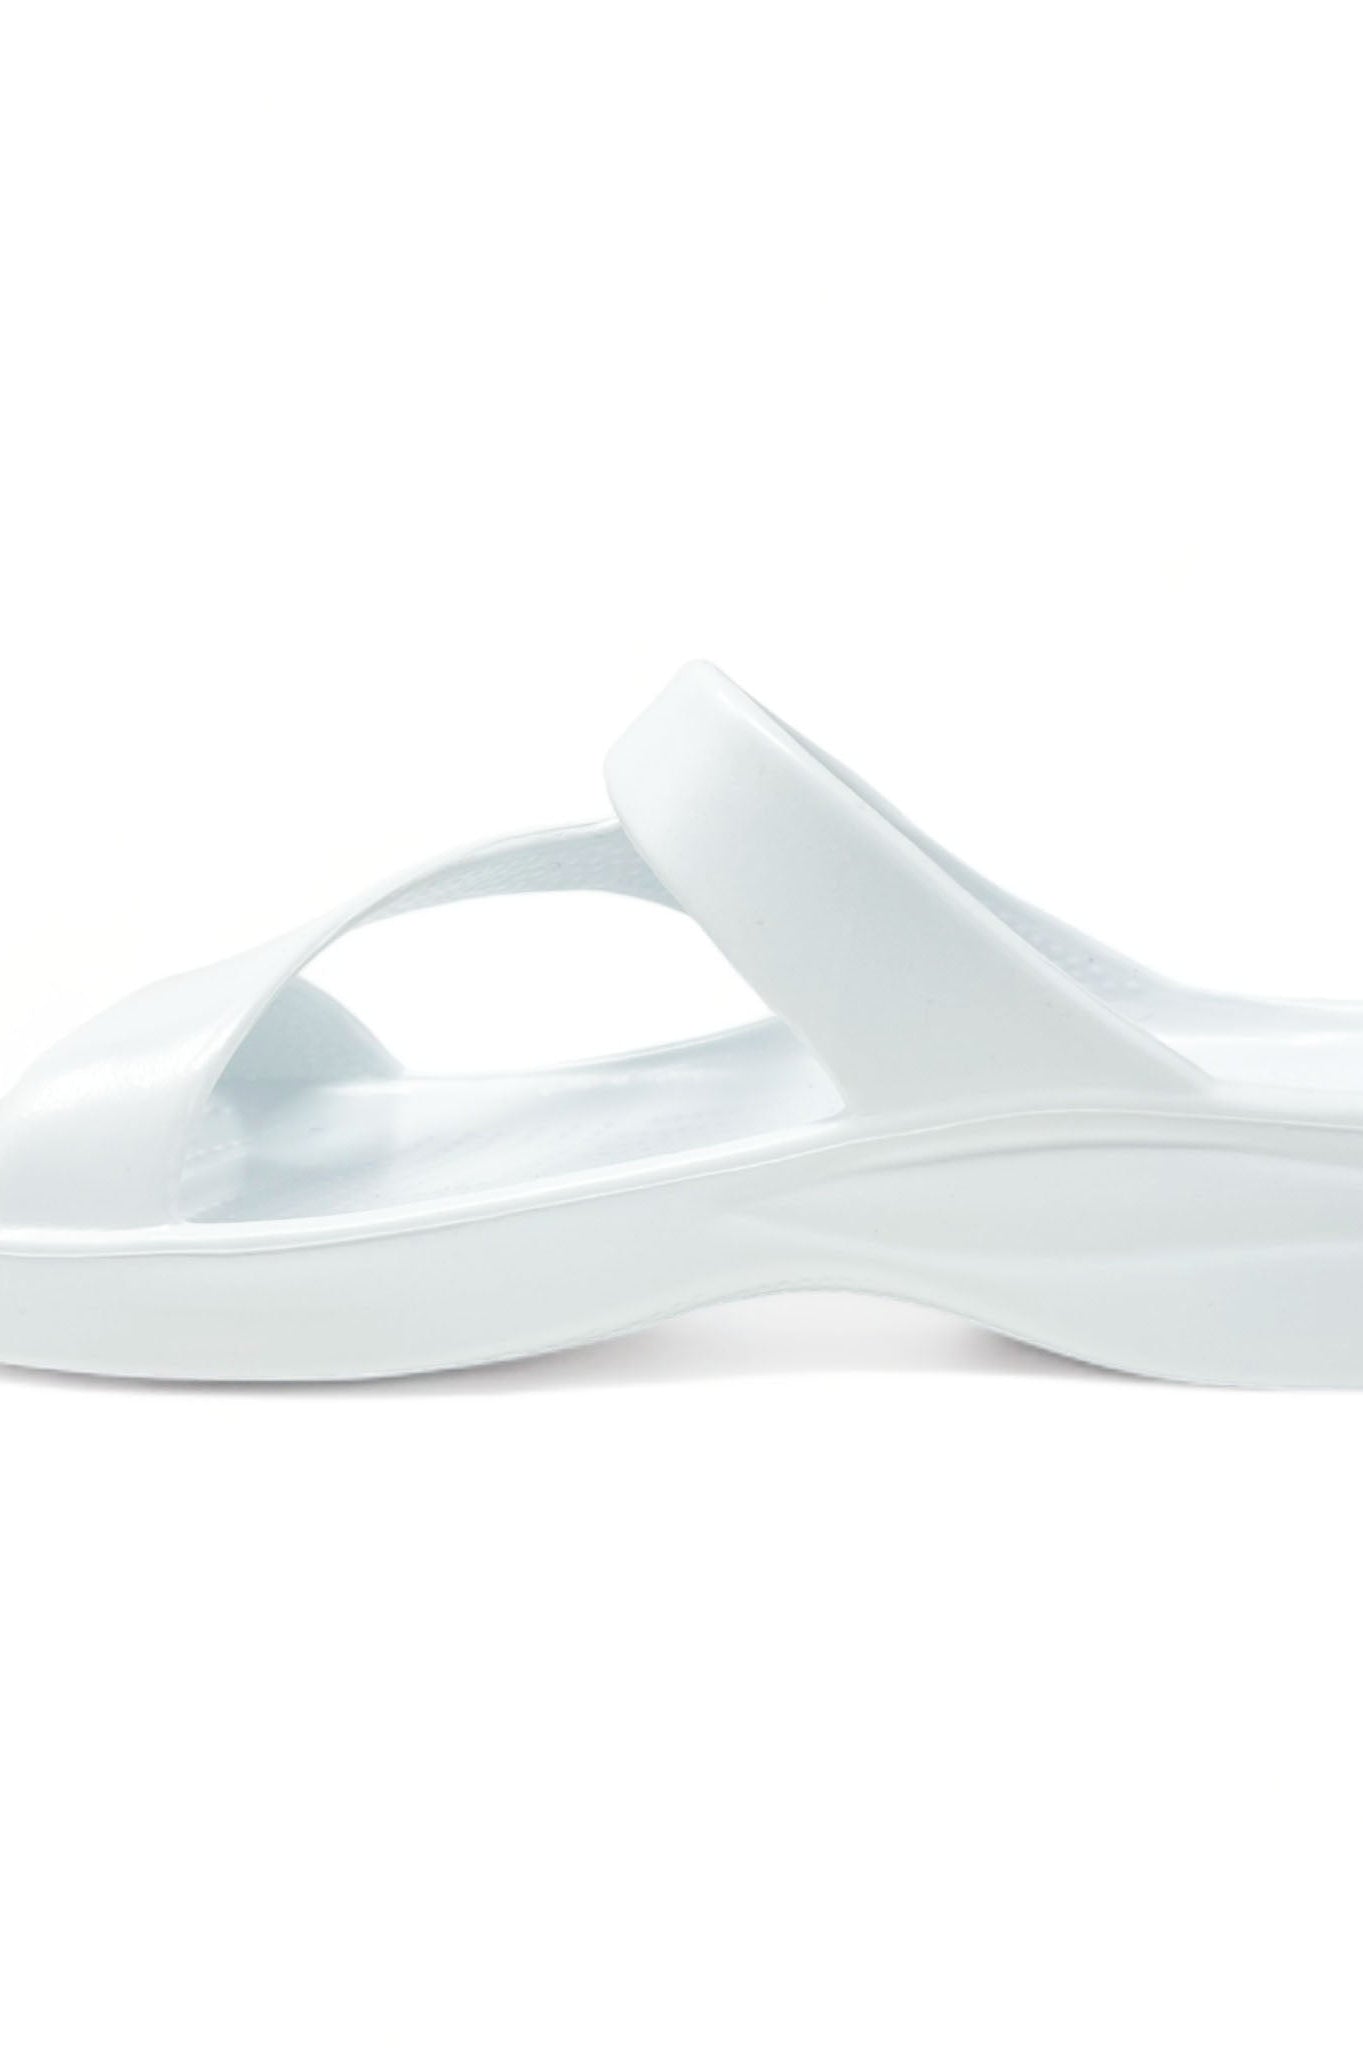 Women's Z Sandals - White DAWGS USA